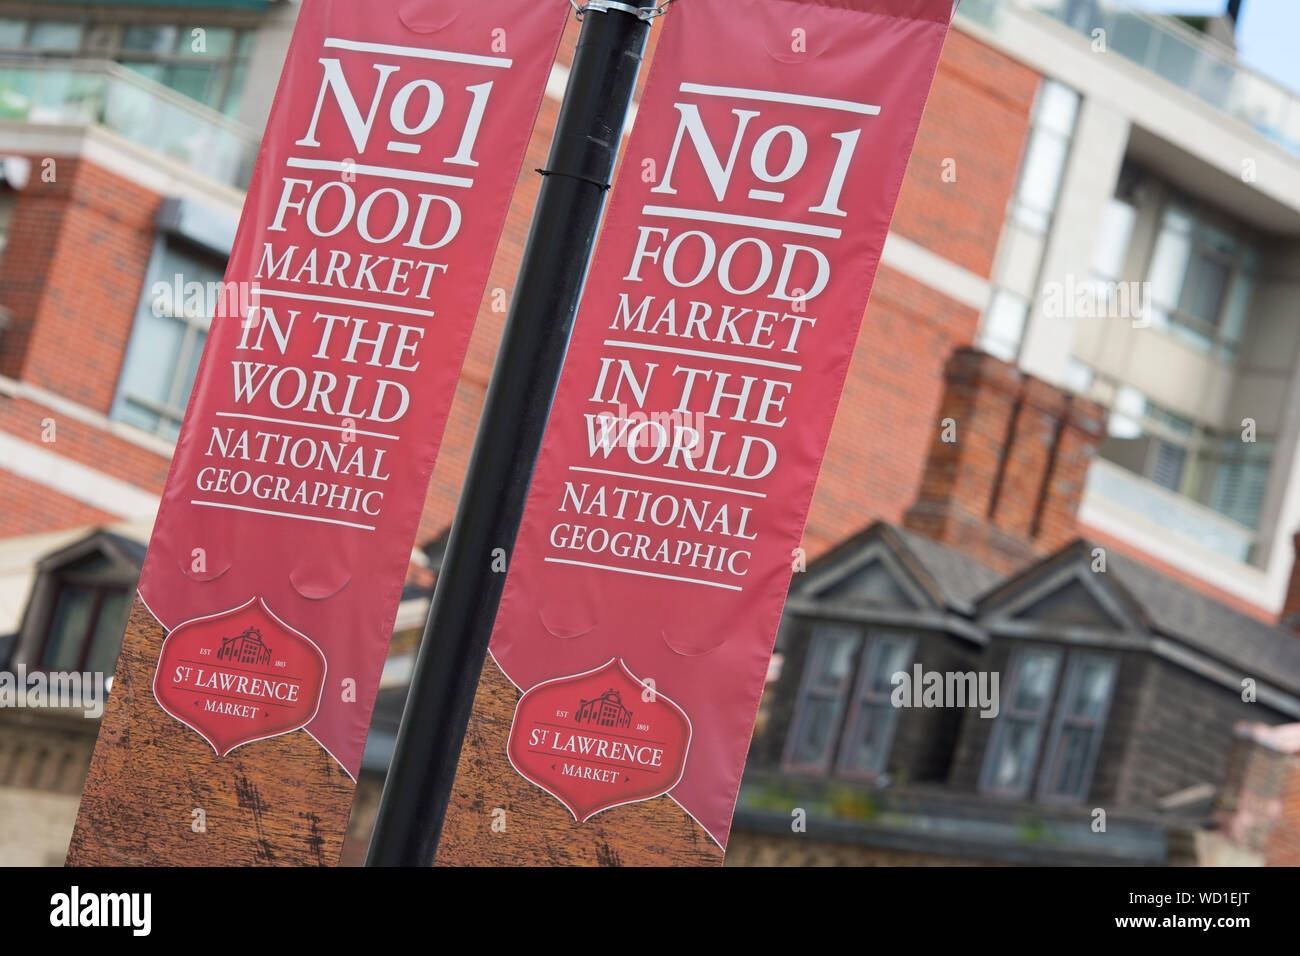 Mercato di San Lorenzo segno, Banner, n. 1 del mercato alimentare nel mondo, Toronto, Ontario, Canada Foto Stock